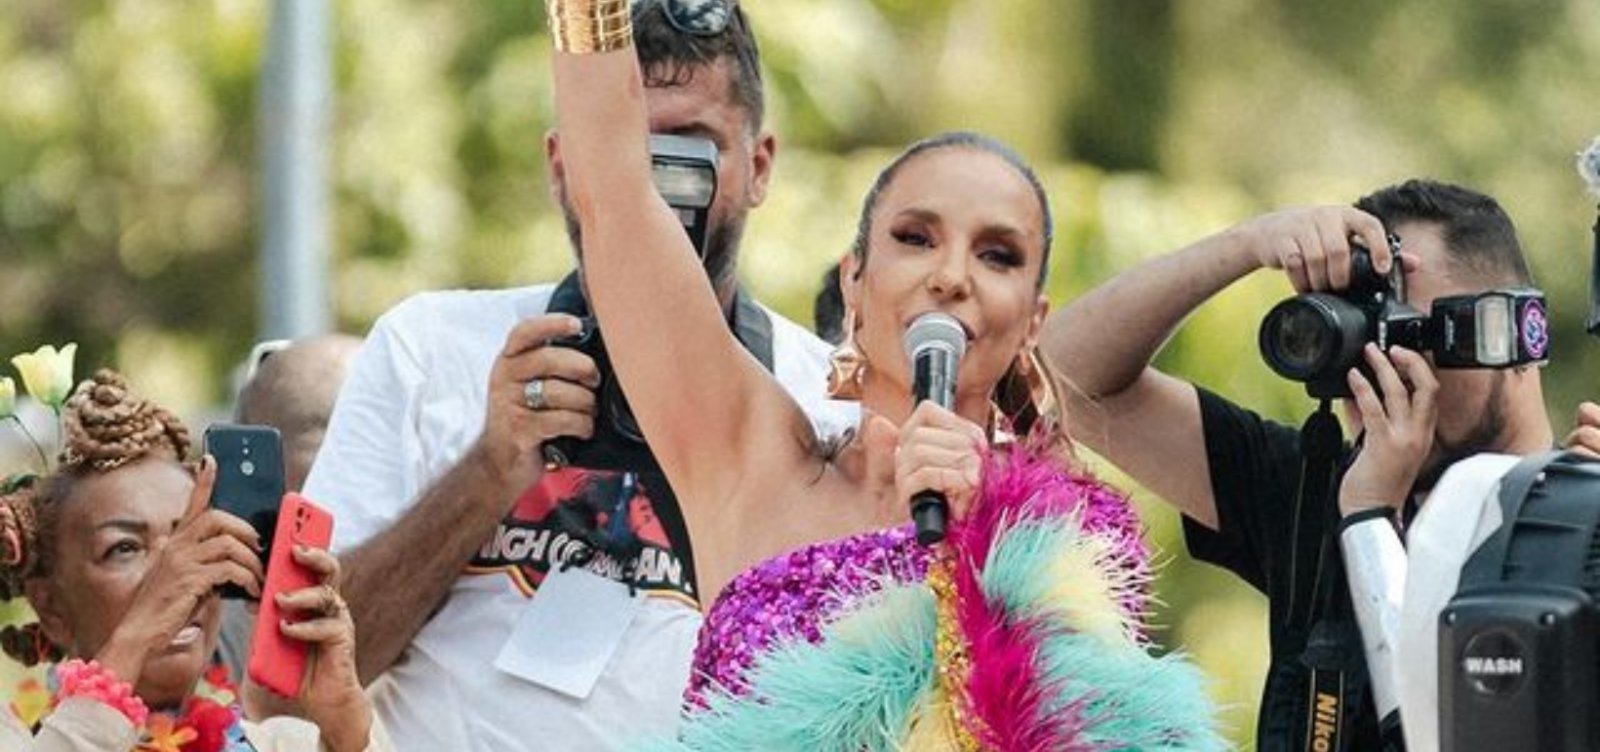 Troféu axé: Canto do Povo de um Lugar, premia "Macetando" como música do Carnaval